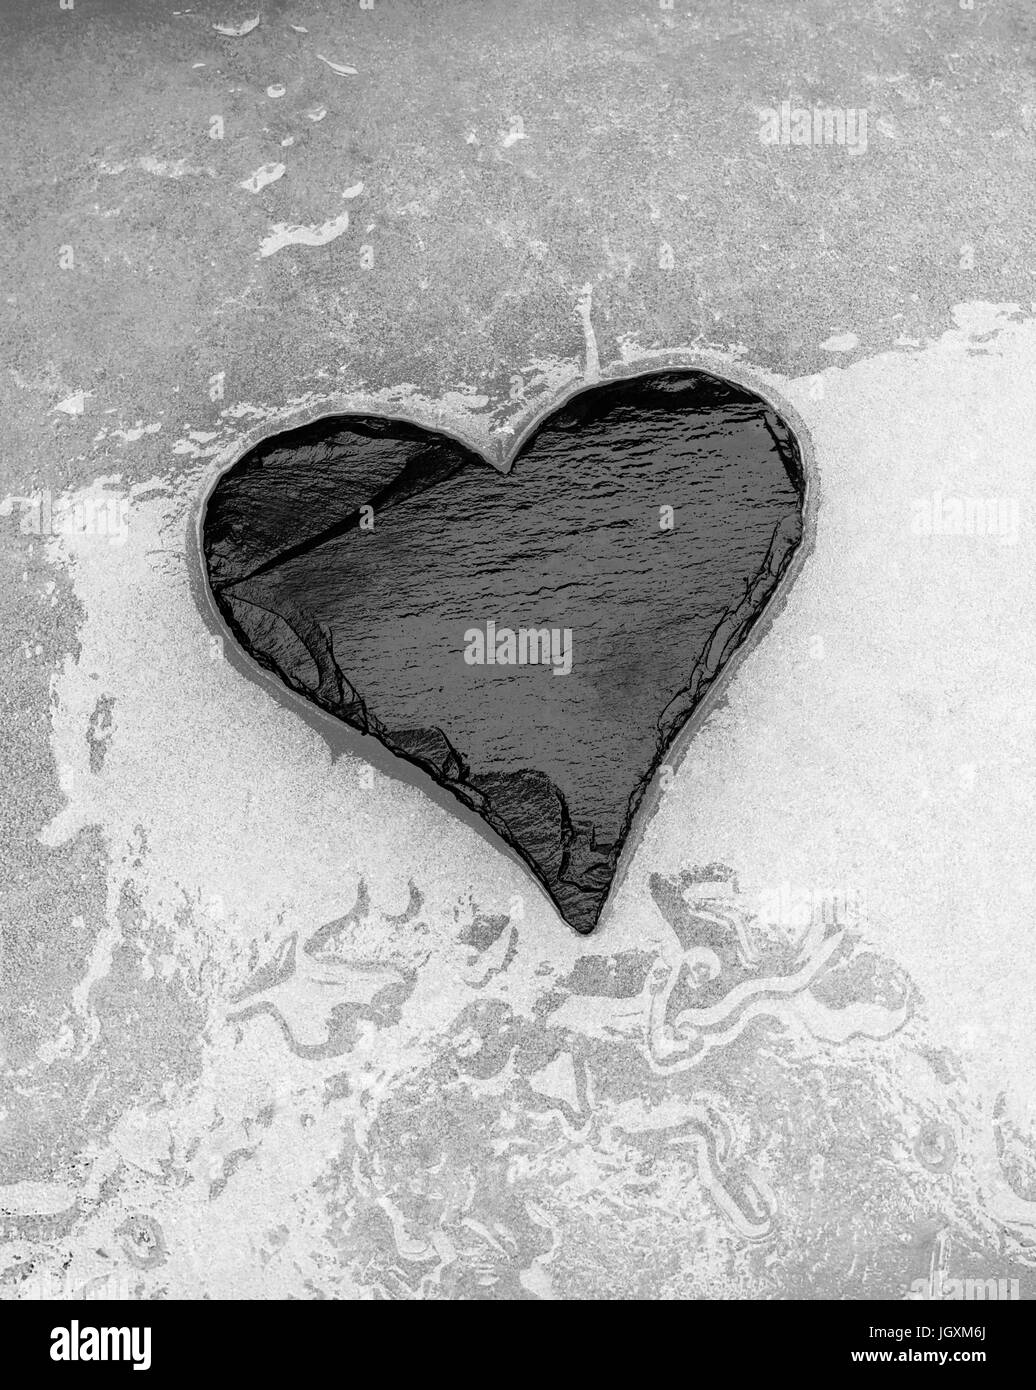 Slate heart lying on surface of melting ice Stock Photo